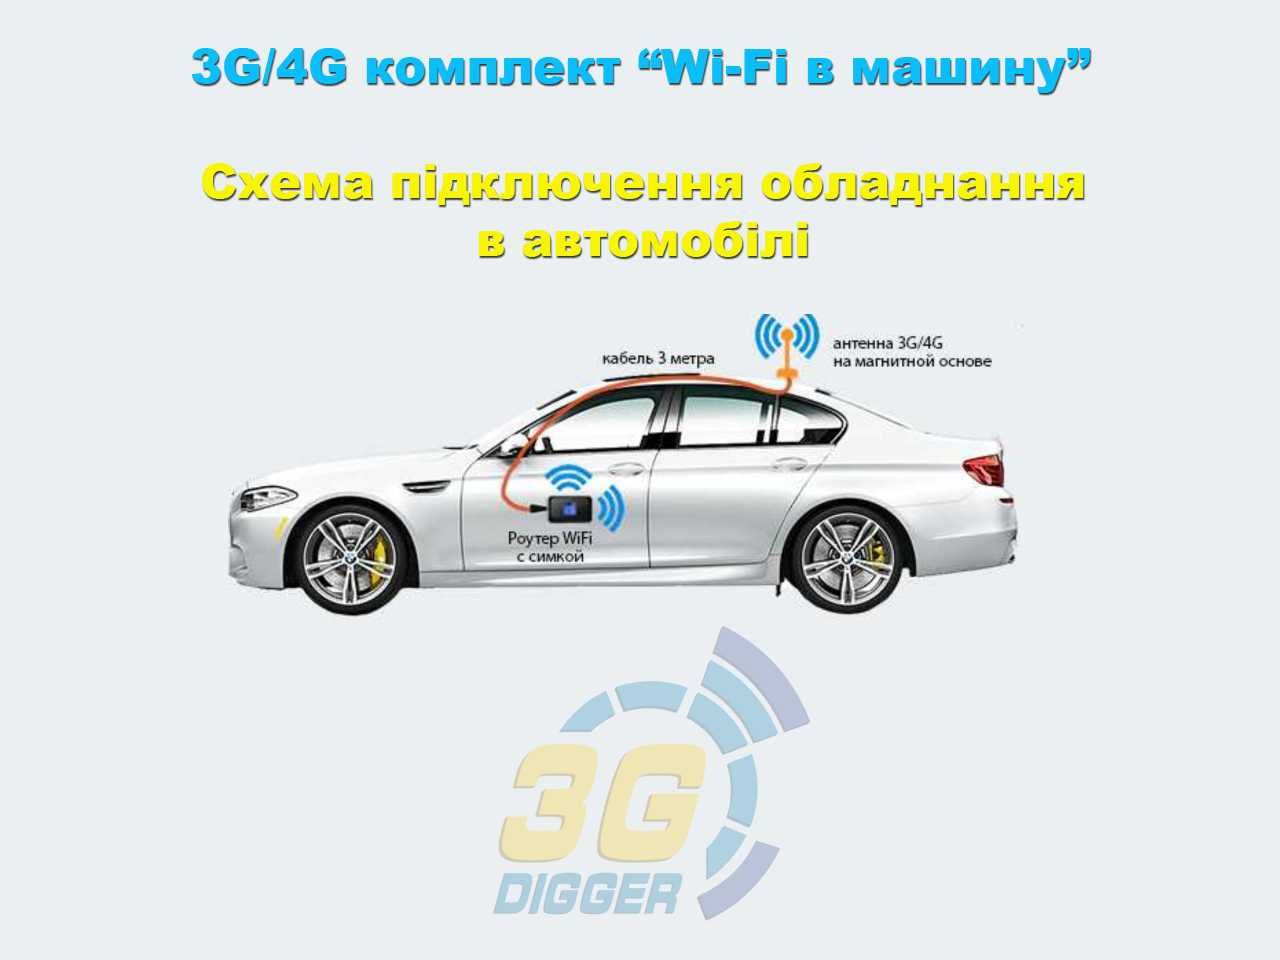 Премиум 3G/4G комплект "WiFi в машину" / ZTE MF79u+Антенна 6дБ+АЗУ 2А